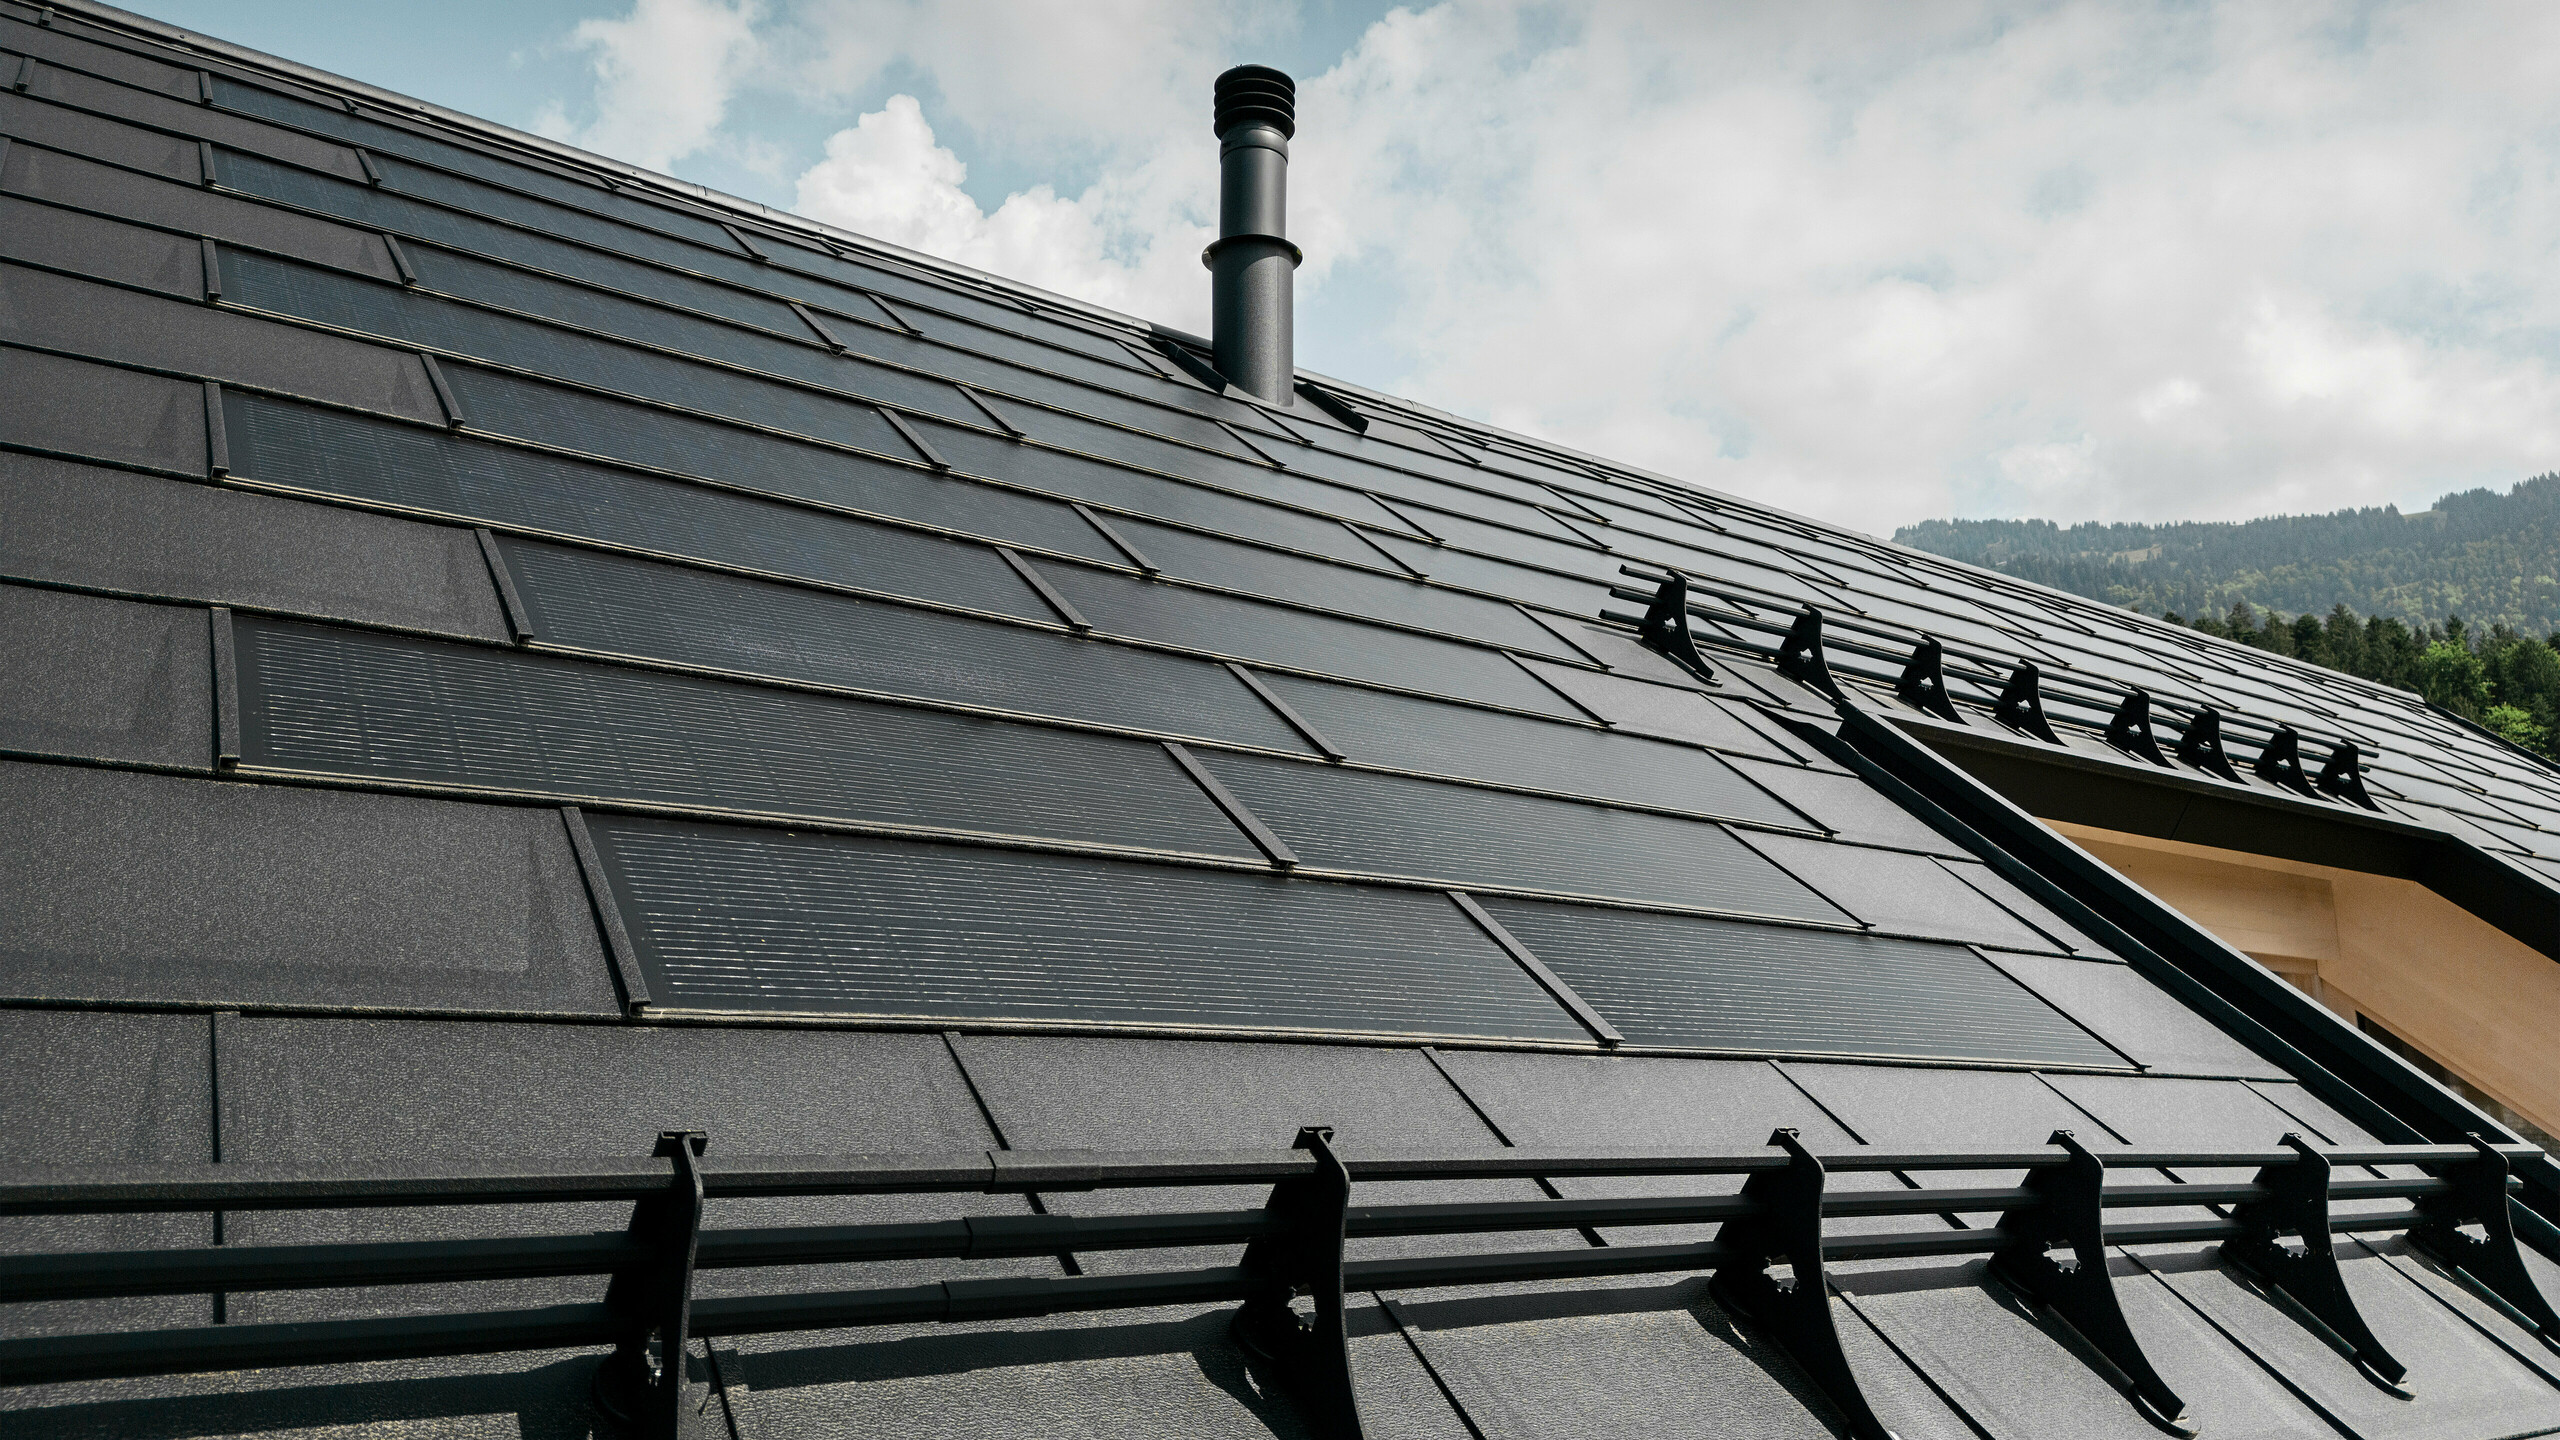 Bližnji posnetek učinkovite solarne strešne plošče PREFA, ki je brezhibno vgrajena v črno streho iz robustnih strešnih plošč PREFA R.16. Kombinacija trajnostne proizvodnje energije in trpežne aluminijaste strehe ponuja ekološko in estetsko strešno rešitev, ki se harmonično zliva s pokrajino.